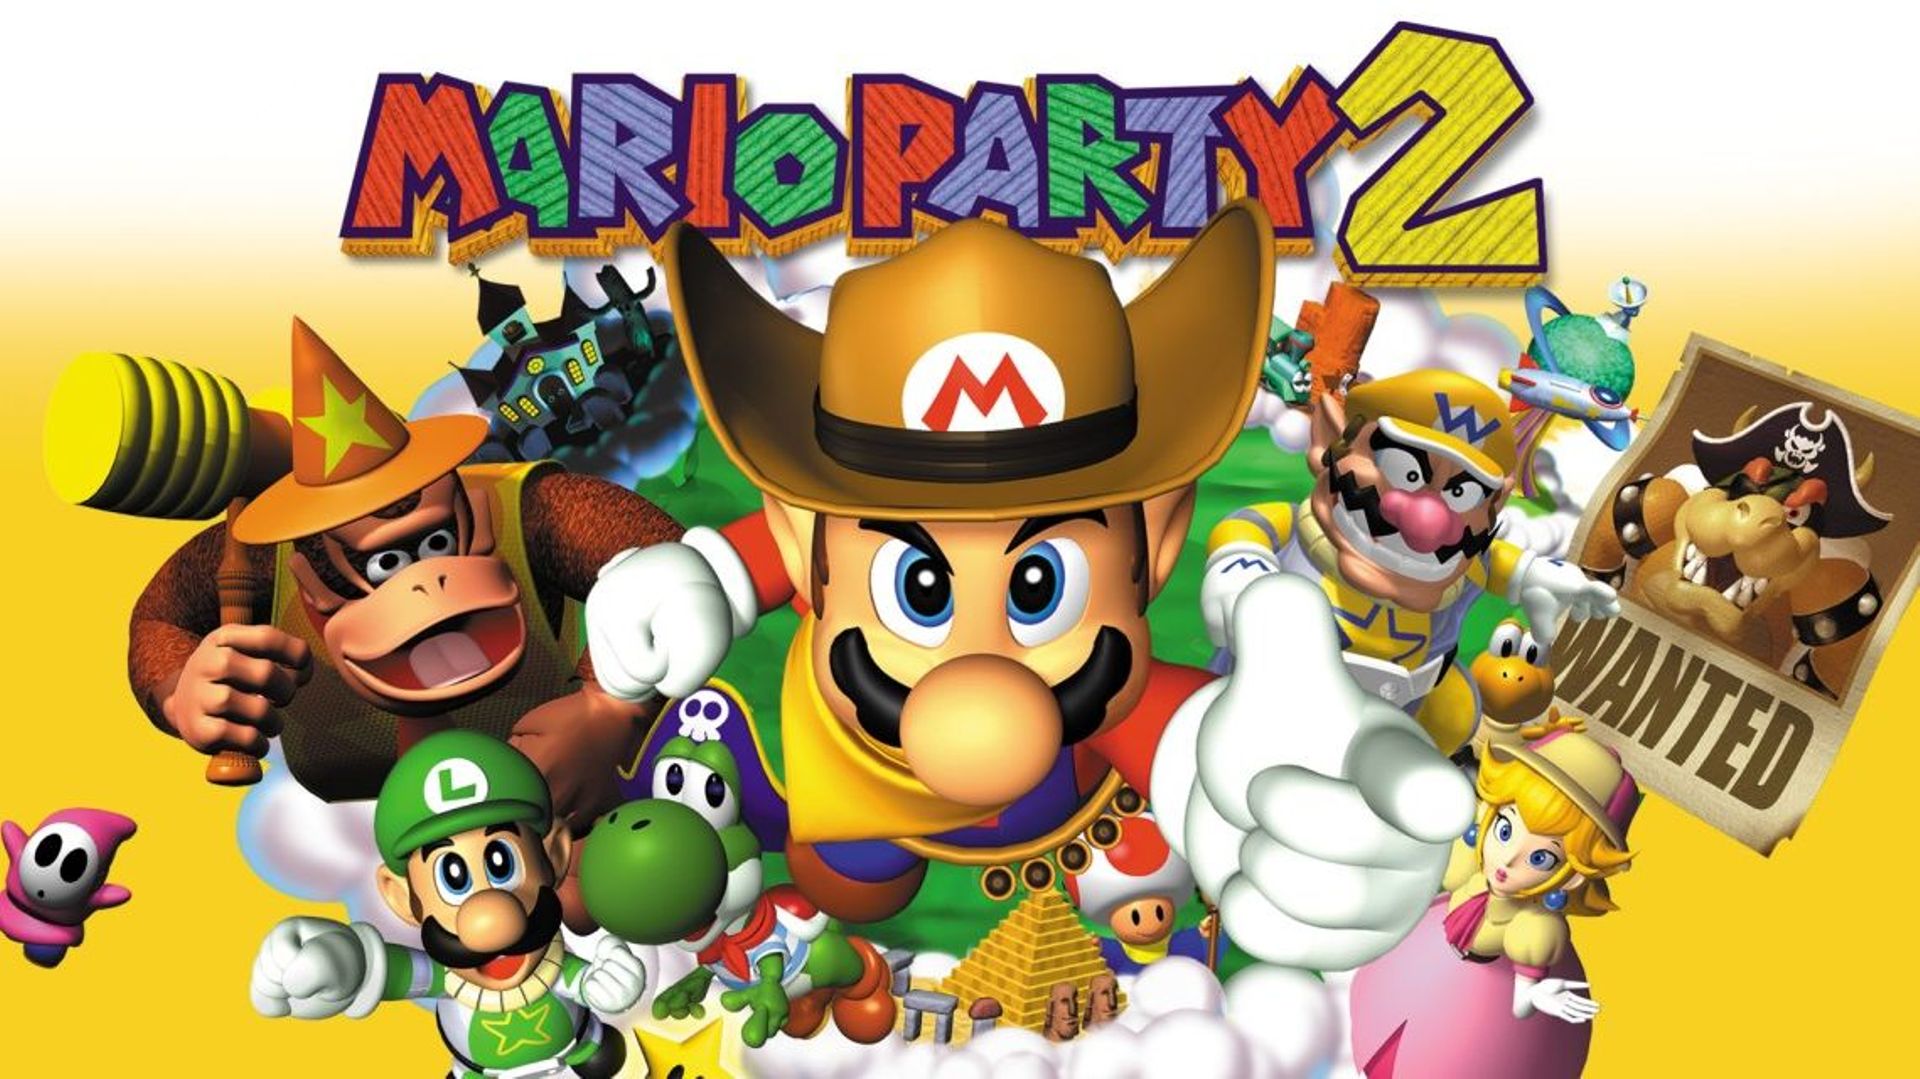 Super Mario Party sur SWITCH, tous les jeux vidéo SWITCH sont chez